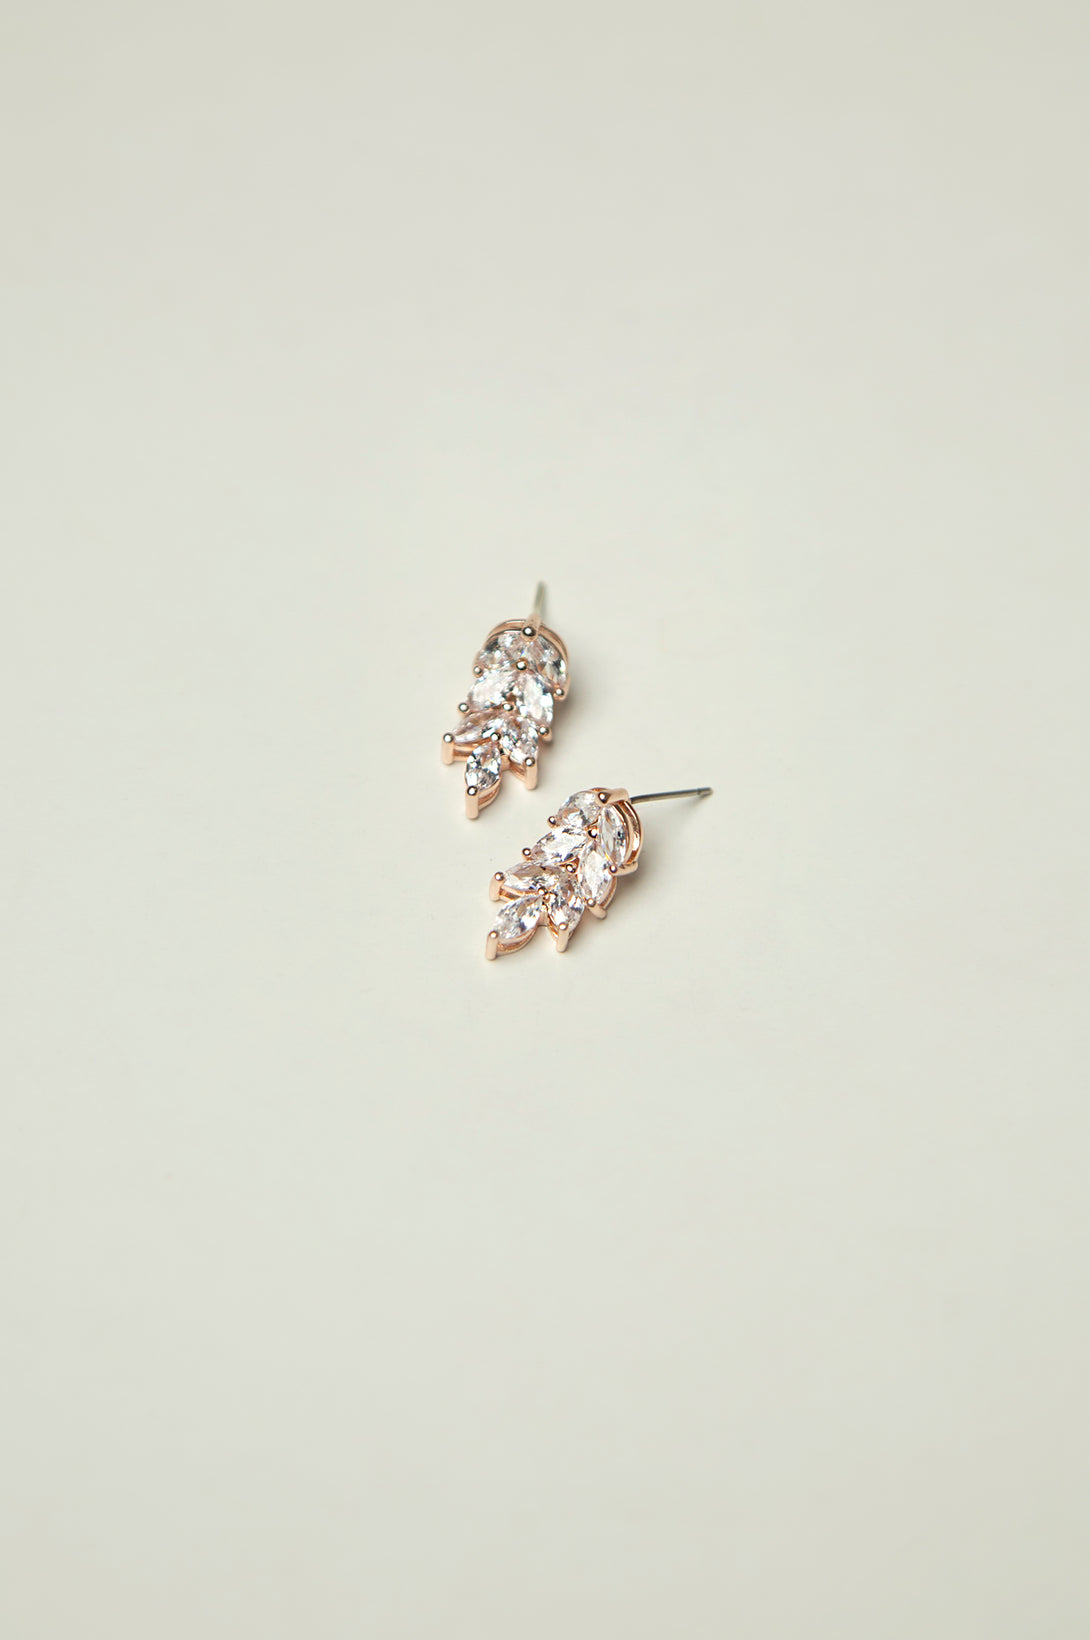 Silver Stud earrings